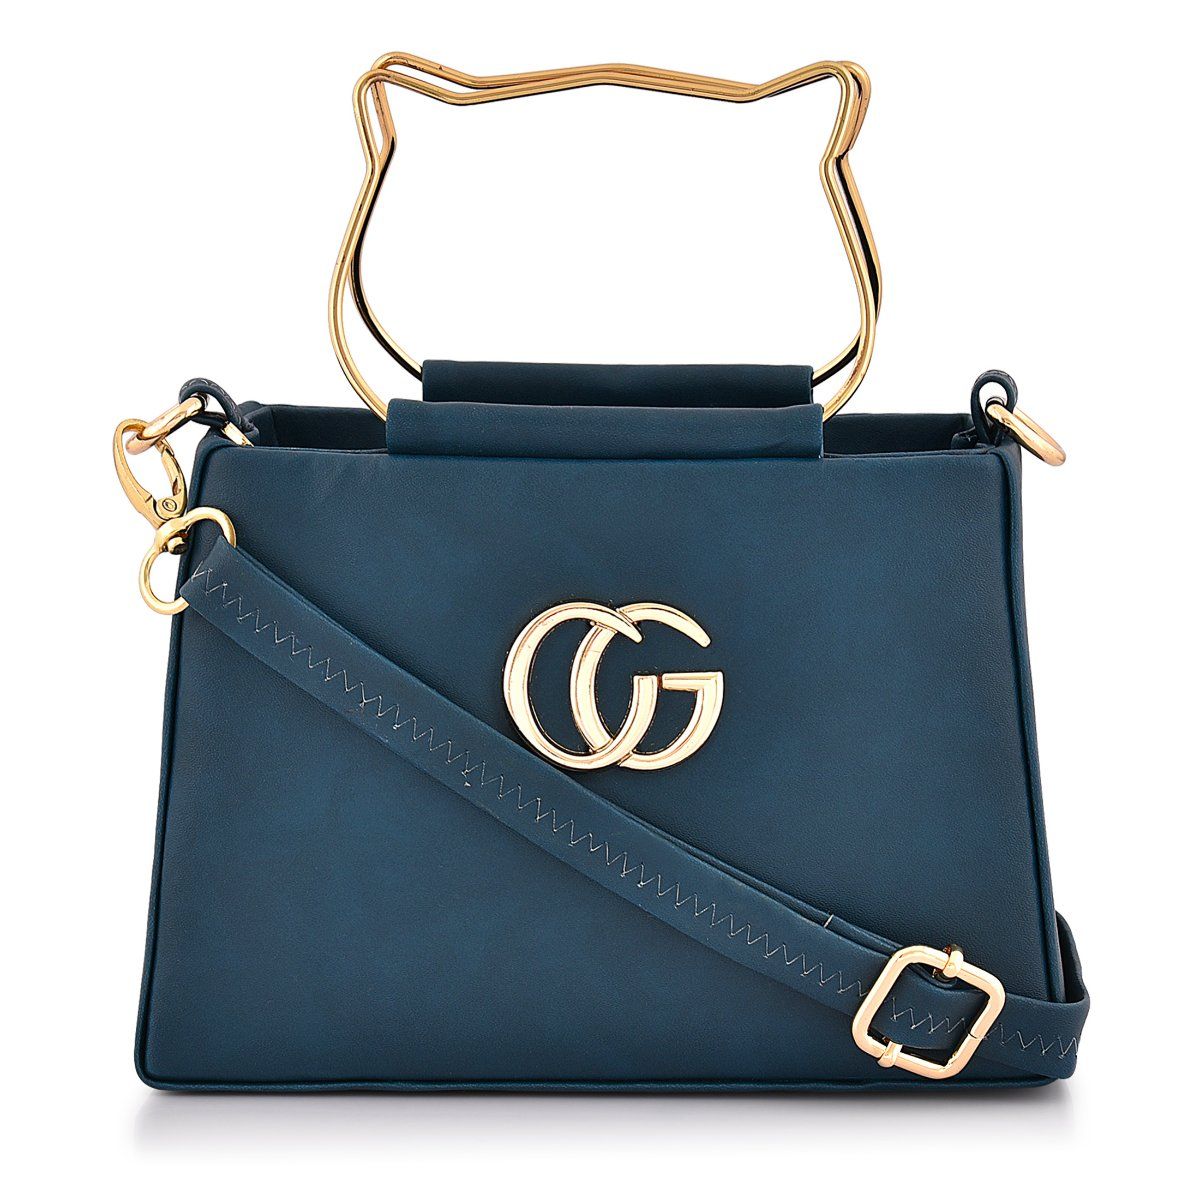 Buy Lapis O Lupo Feger Trendy Women Handbag (Blue) Online